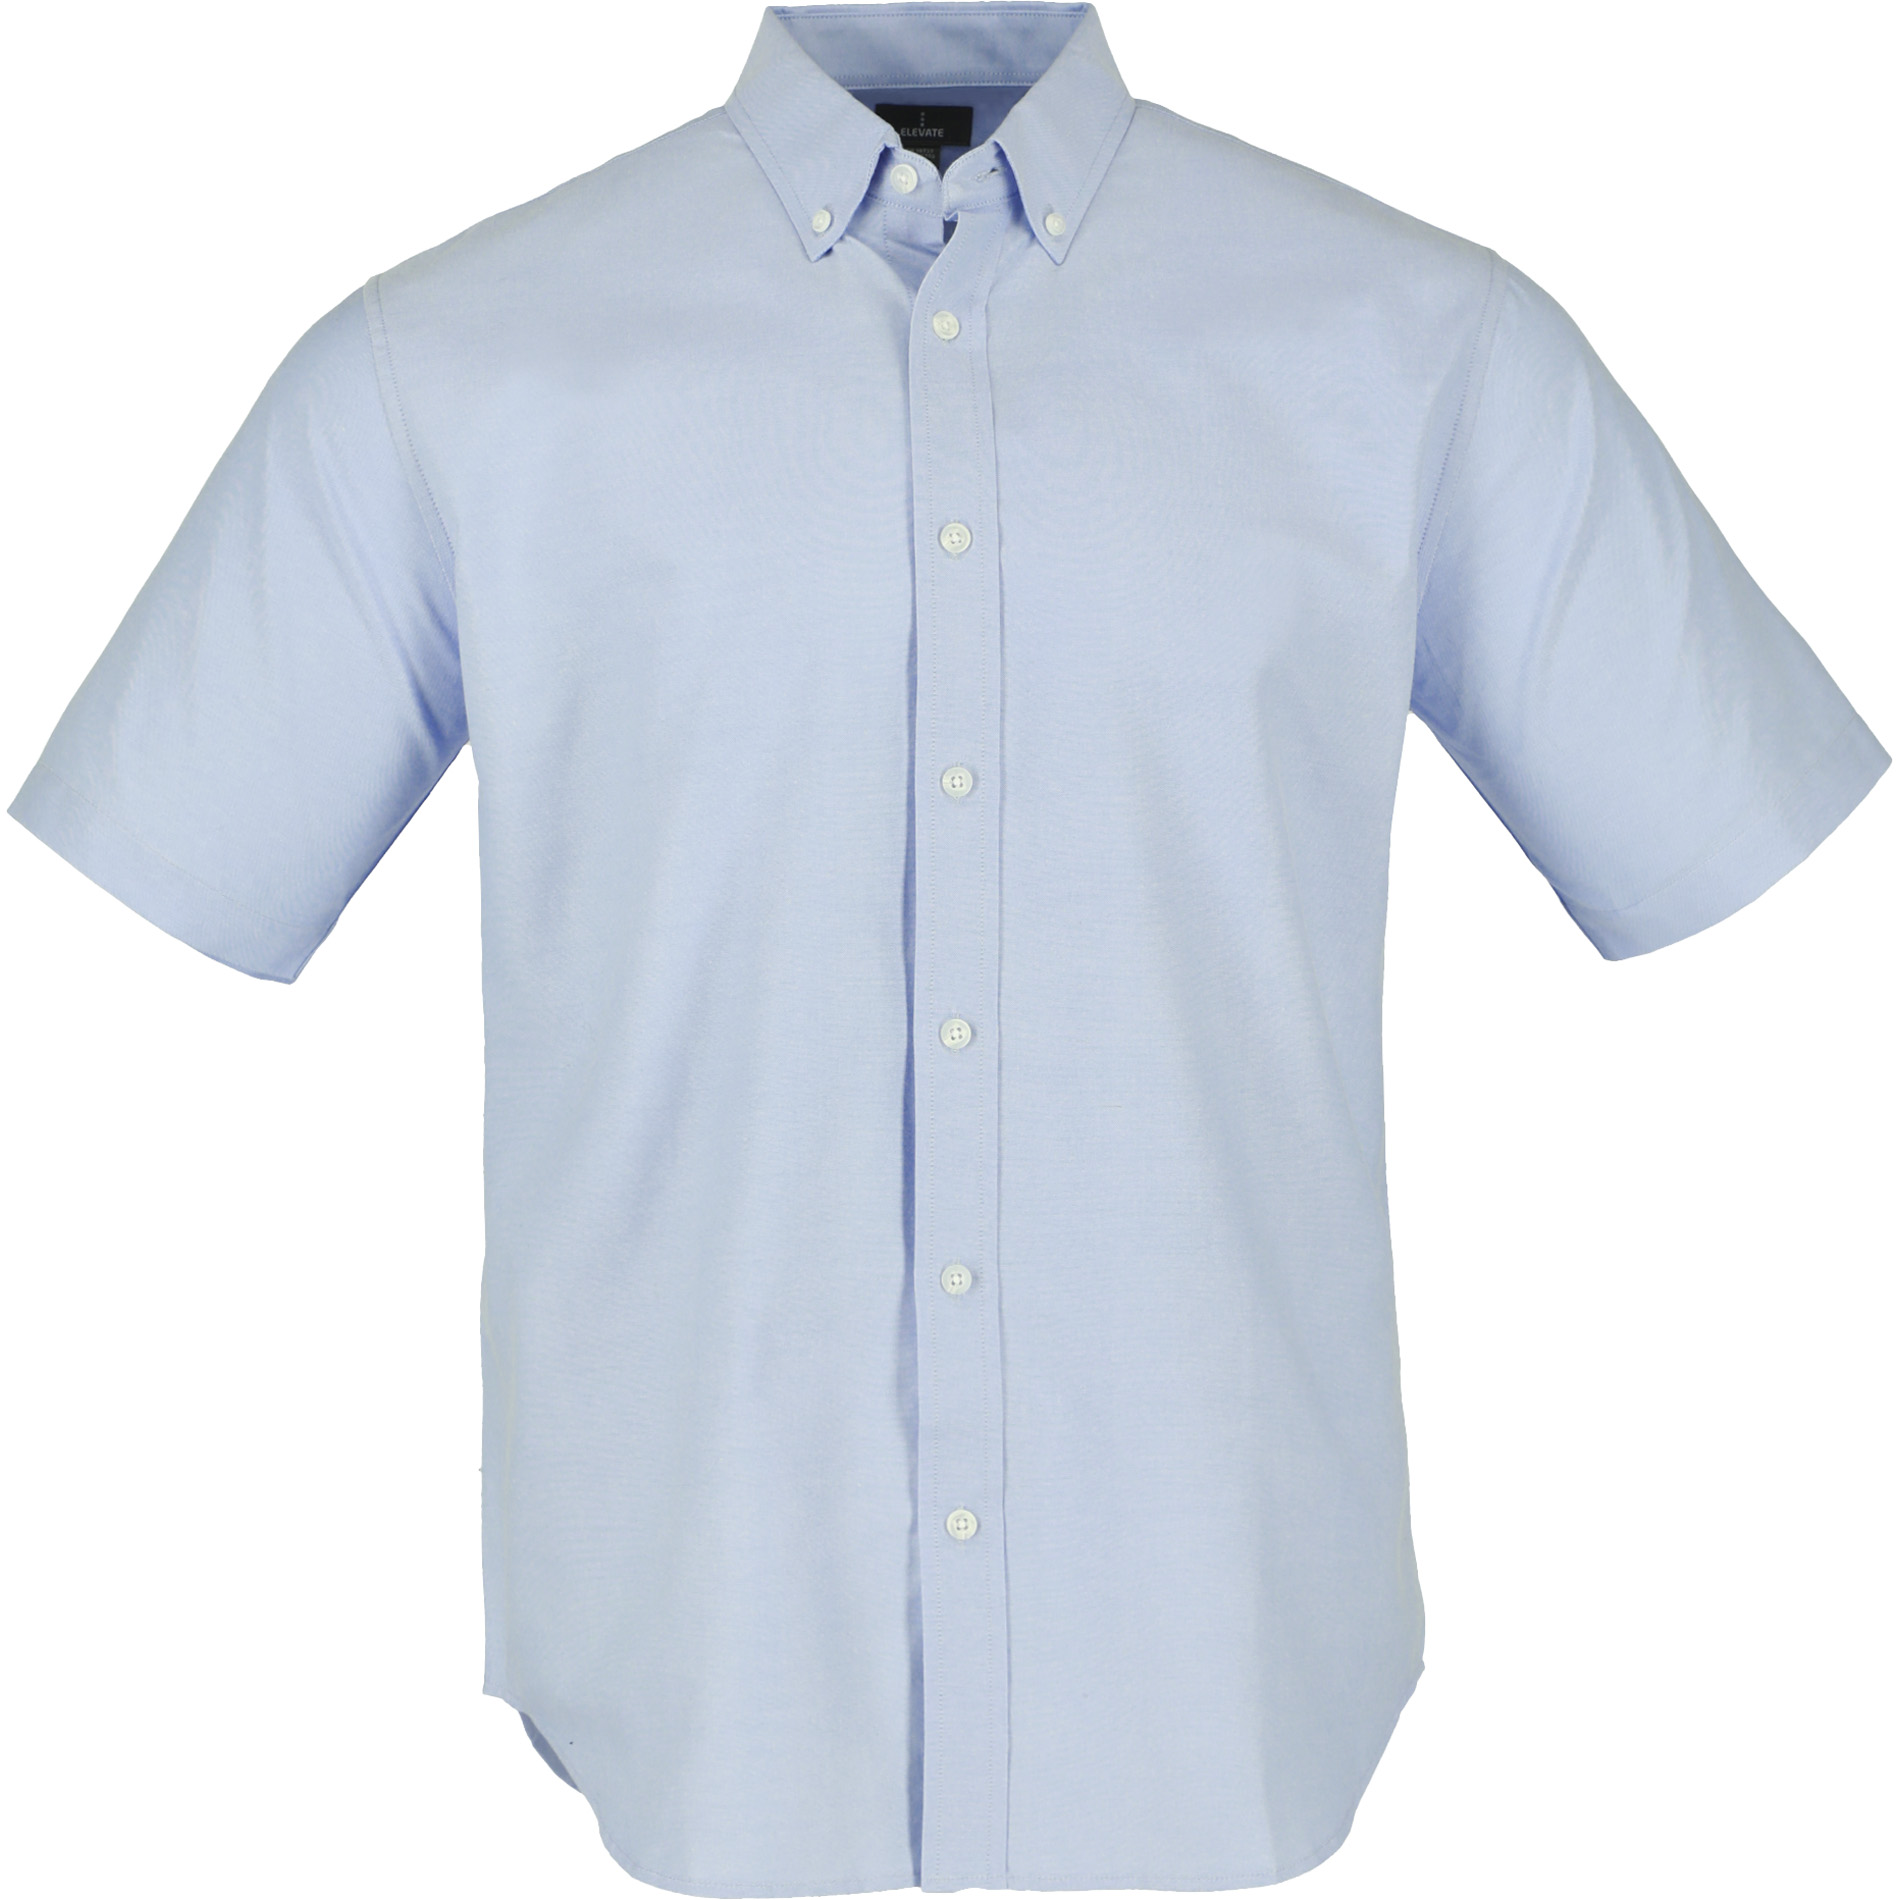 Trimark TM17702 - Men's SAMSON Oxford Short Sleeve Shirt